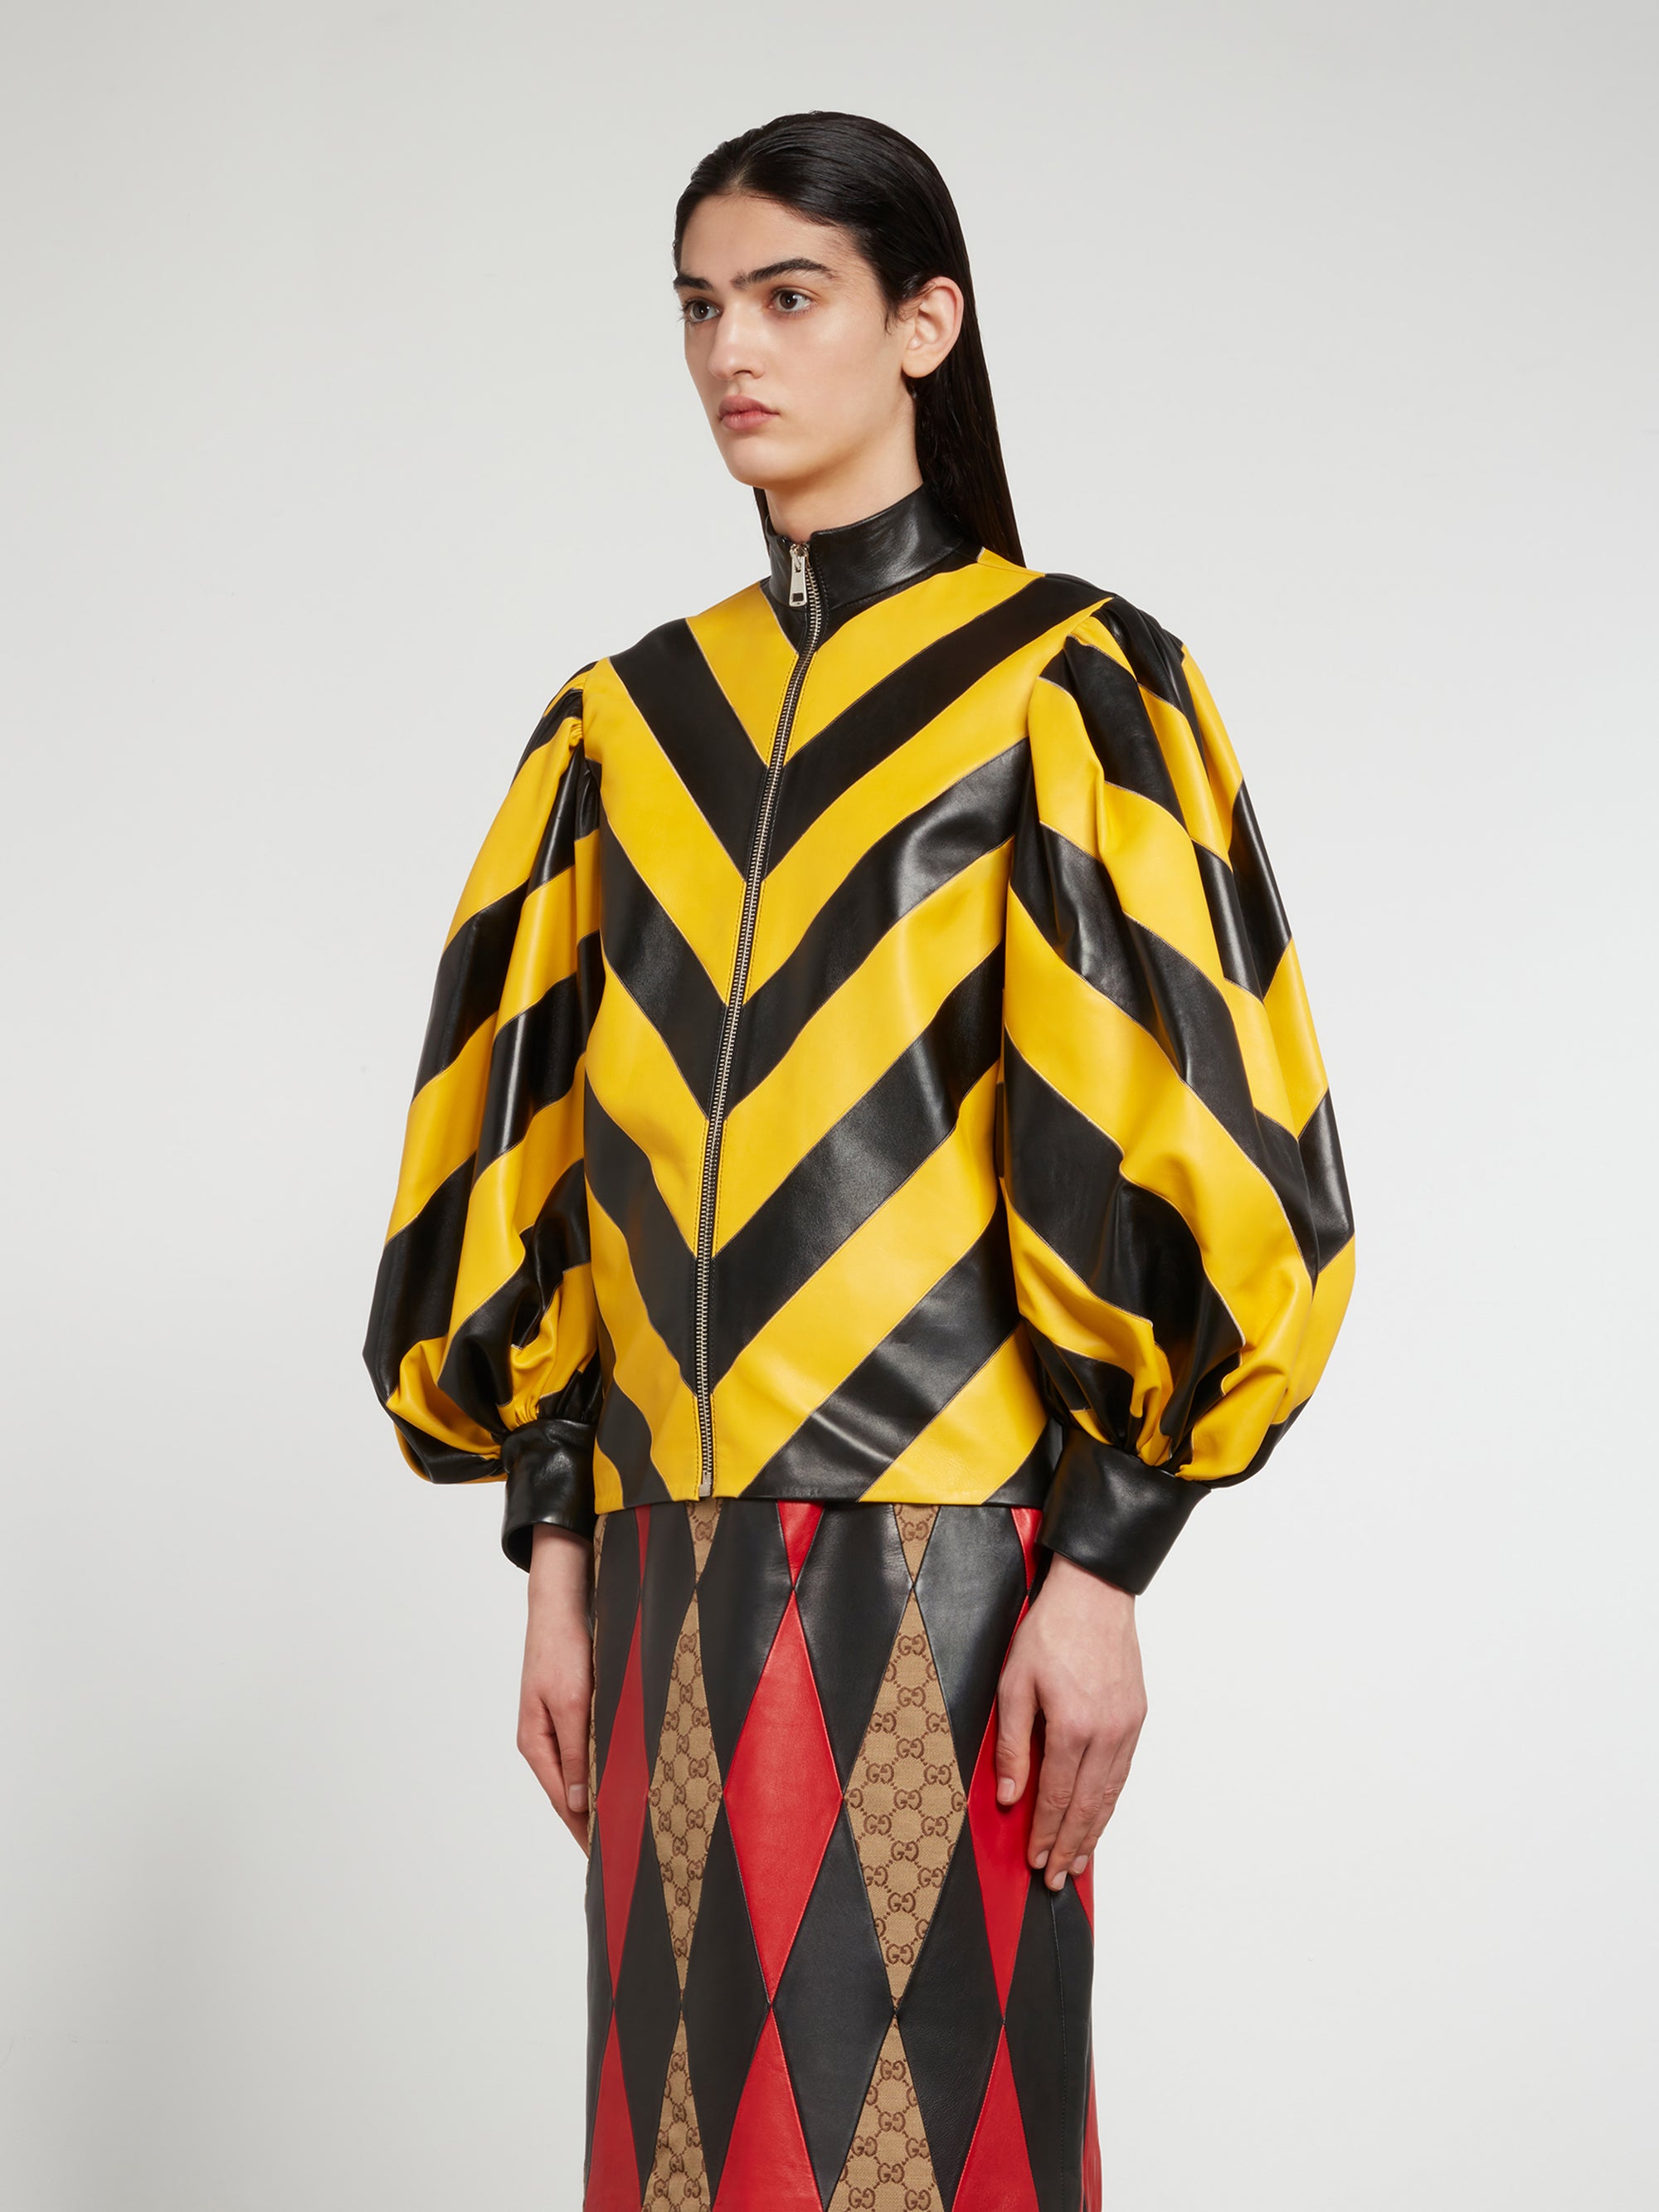 Gucci - Women’s DSM Exclusive Intarisa Leather Zip Jacket - (Black/Yellow) view 2